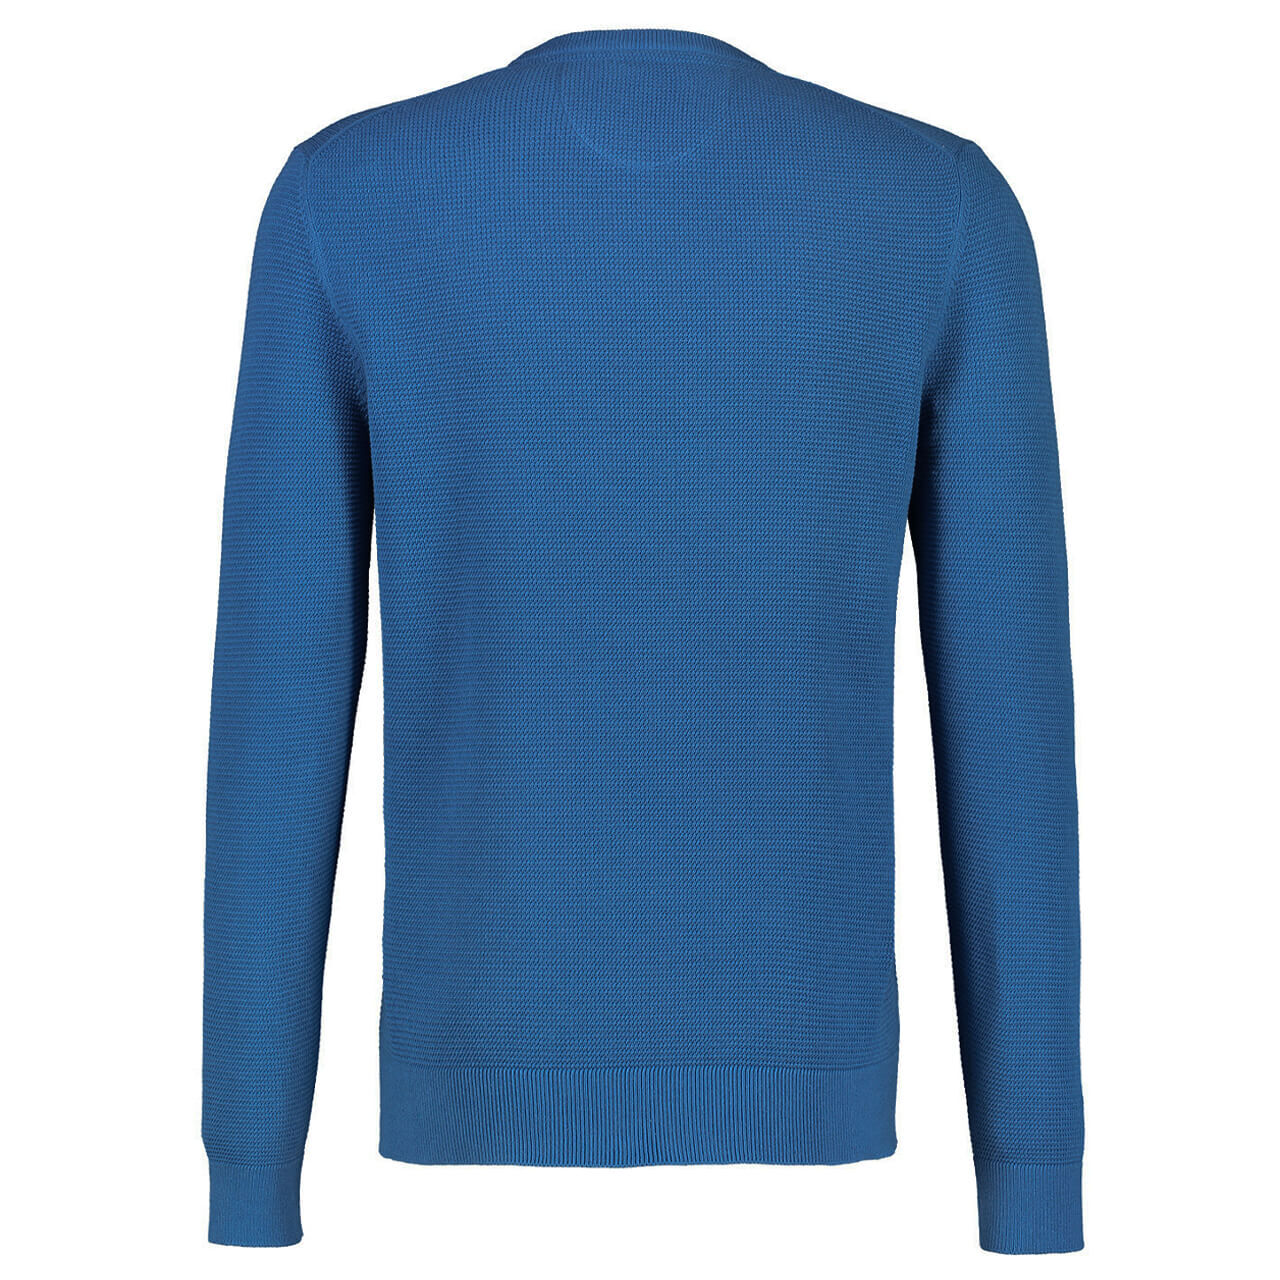 Lerros Pullover für Herren in Blau, FarbNr.: 432